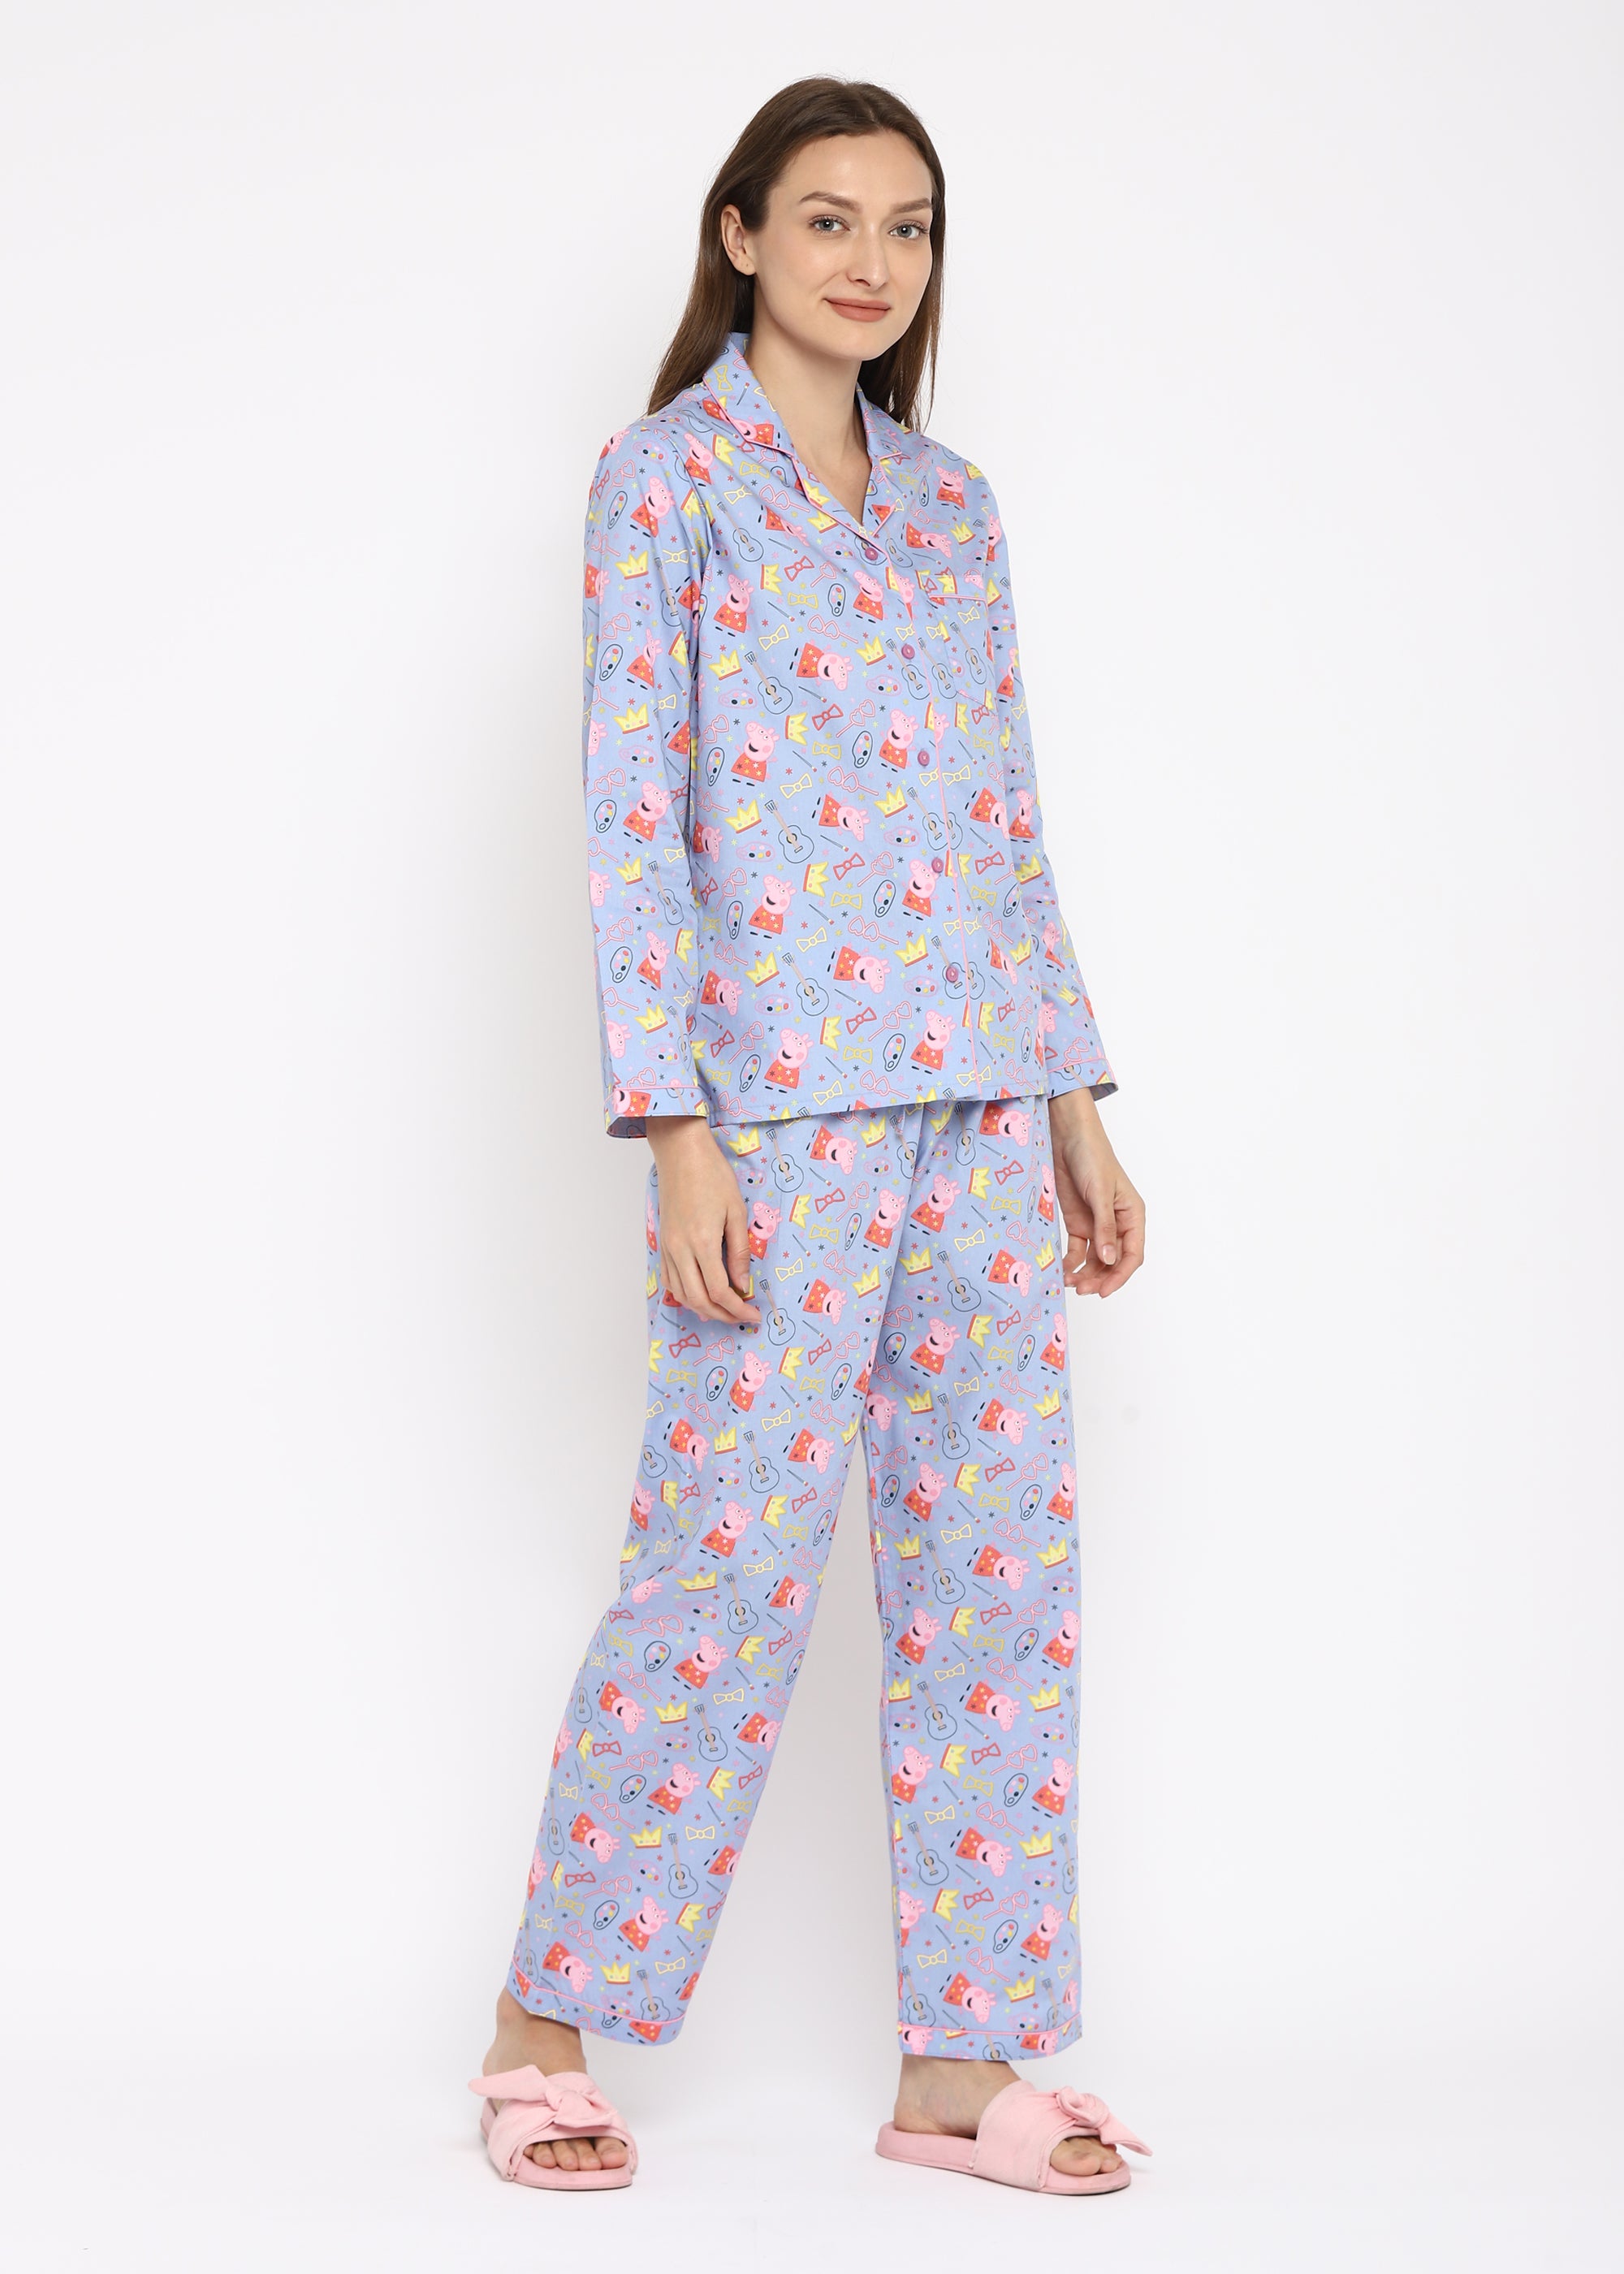 Peppa Crown Print Long Sleeve Women's Night Suit - Shopbloom